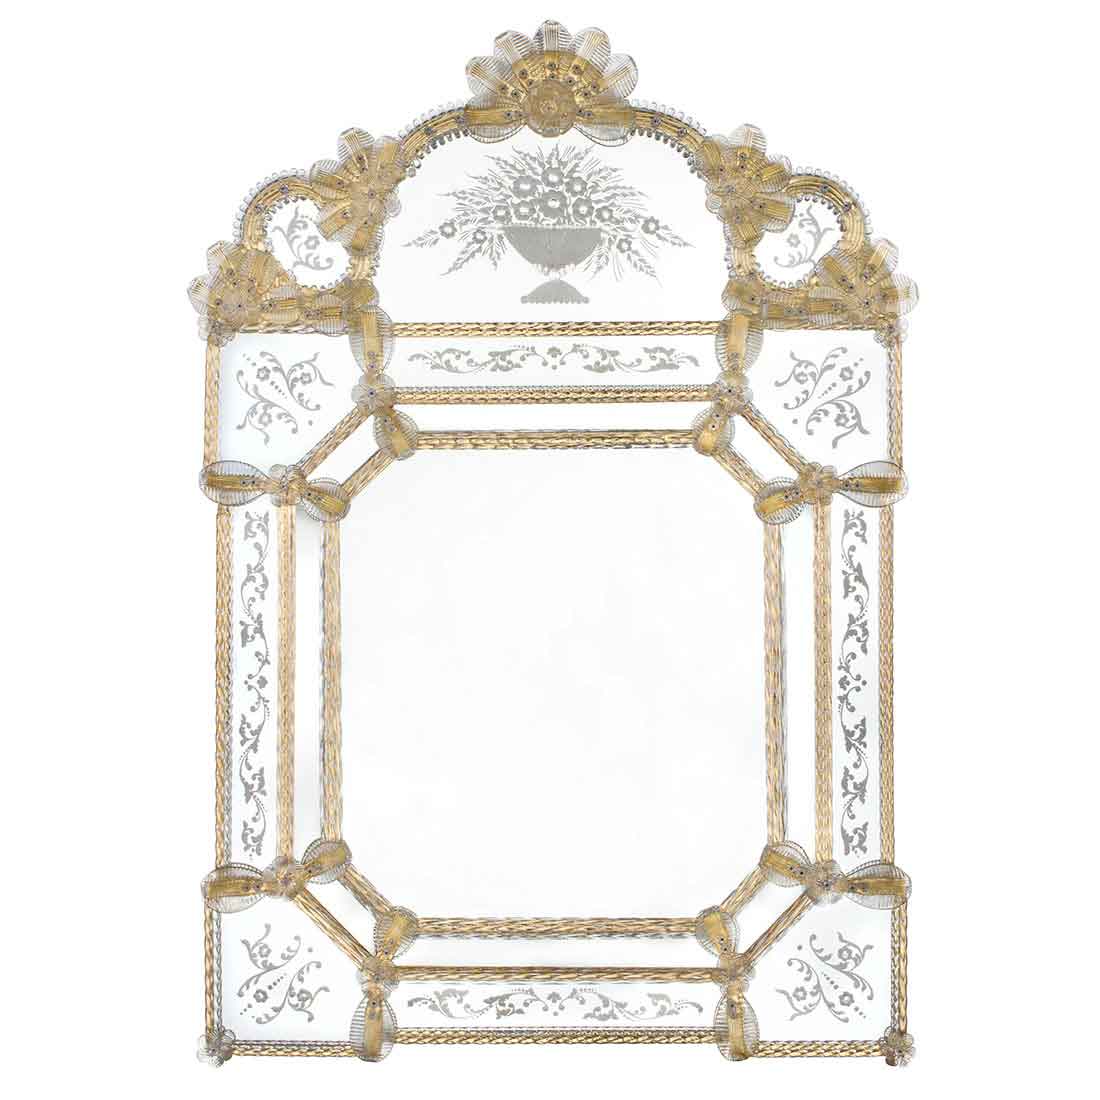 specchio veneziano in stile classico con fasce incise a mano e ricci, canne, foglie, fiori e fiori doppi in vetro di murano di colore cristallo-oro su fondo oro